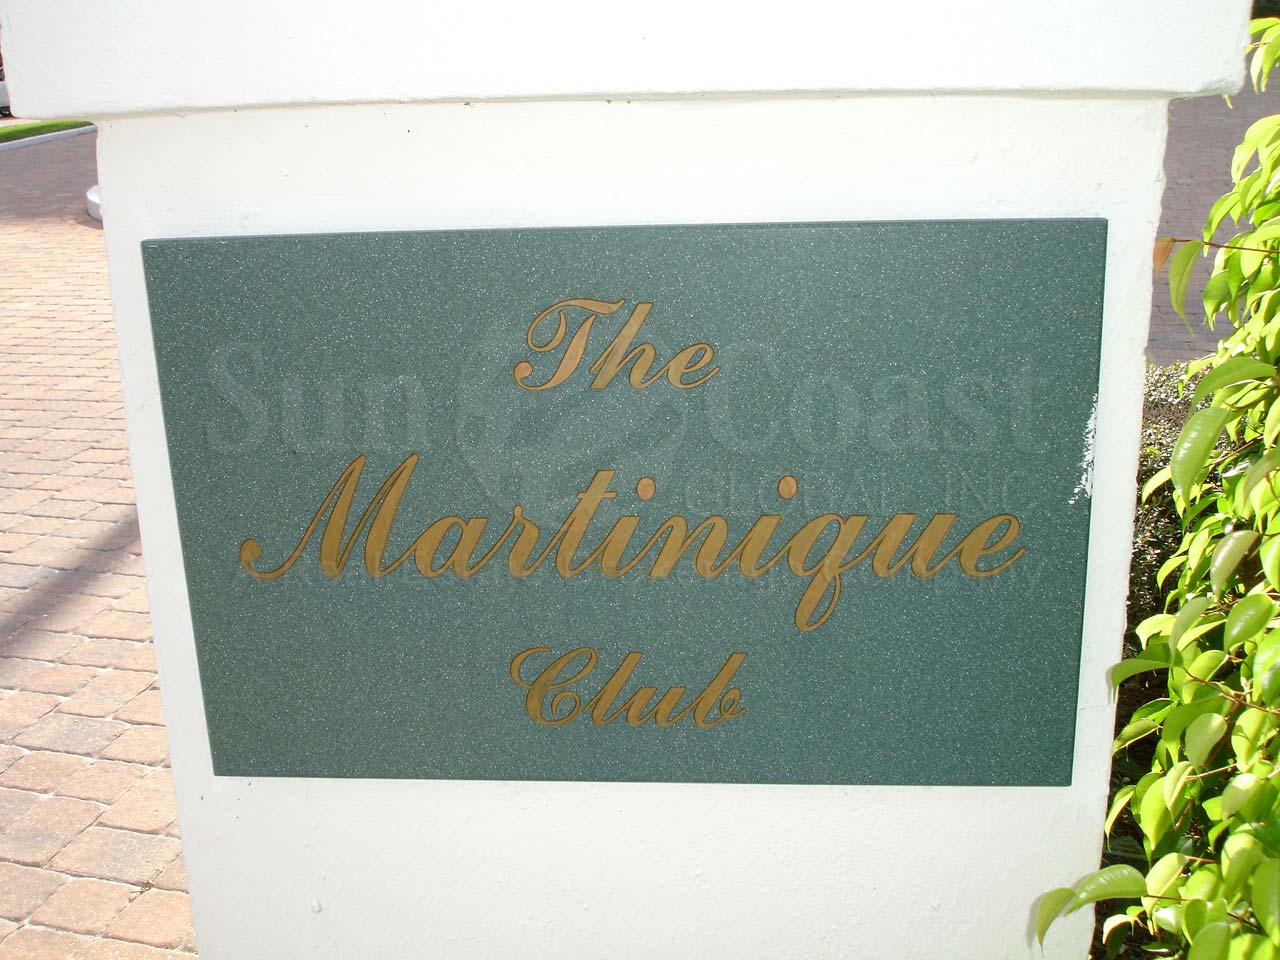 Martinique Club Signage